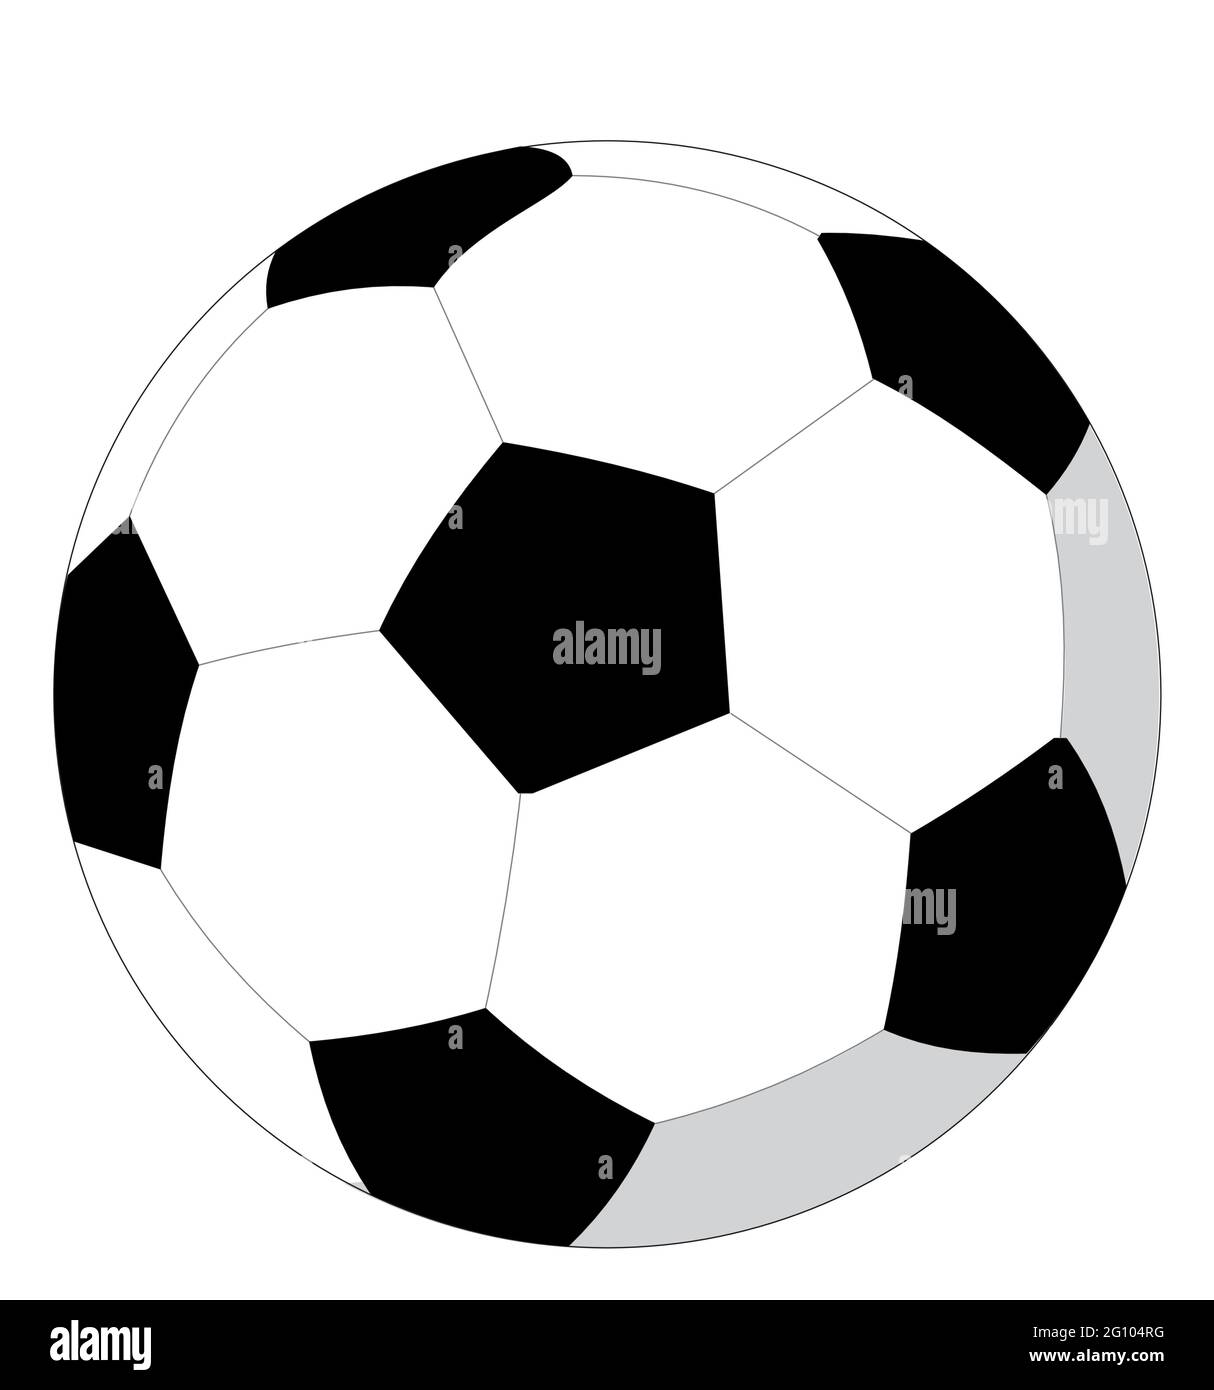 Ballon de football ou de football, ballon en noir et blanc comme dessin vectoriel Illustration de Vecteur